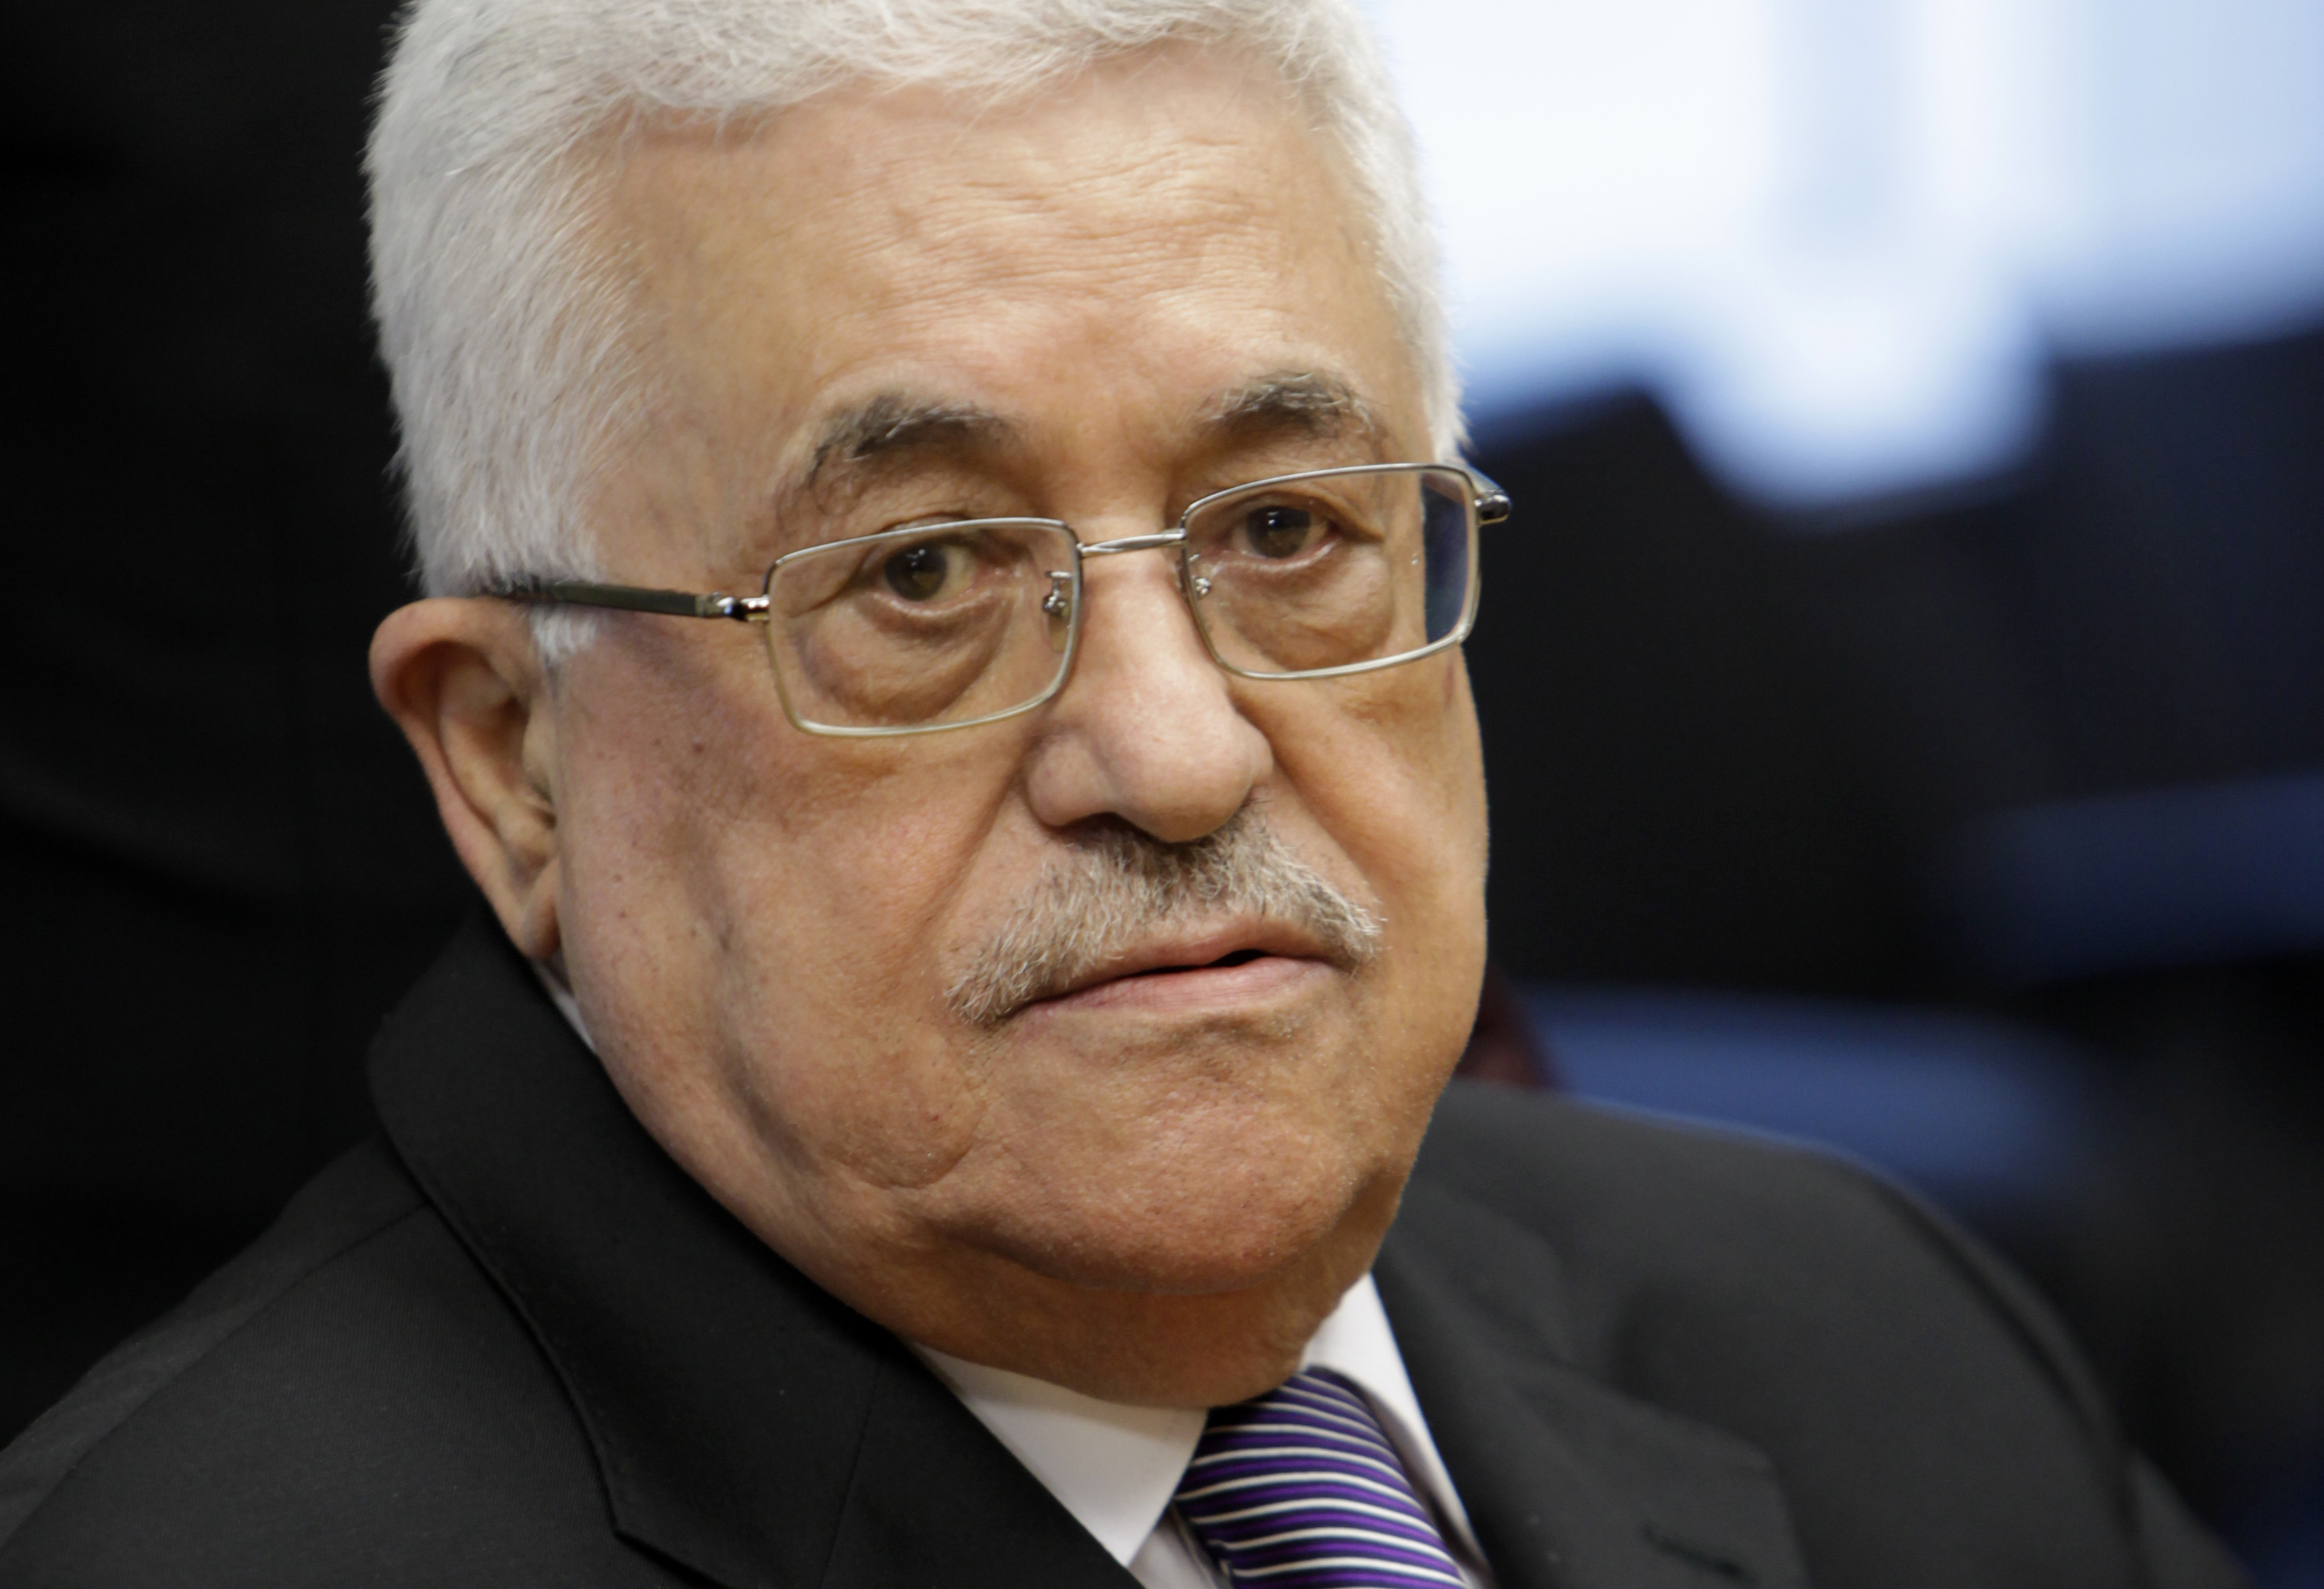 محمود عباس: سياسات وأفعال حماس لا تمثل الشعب الفلسطيني